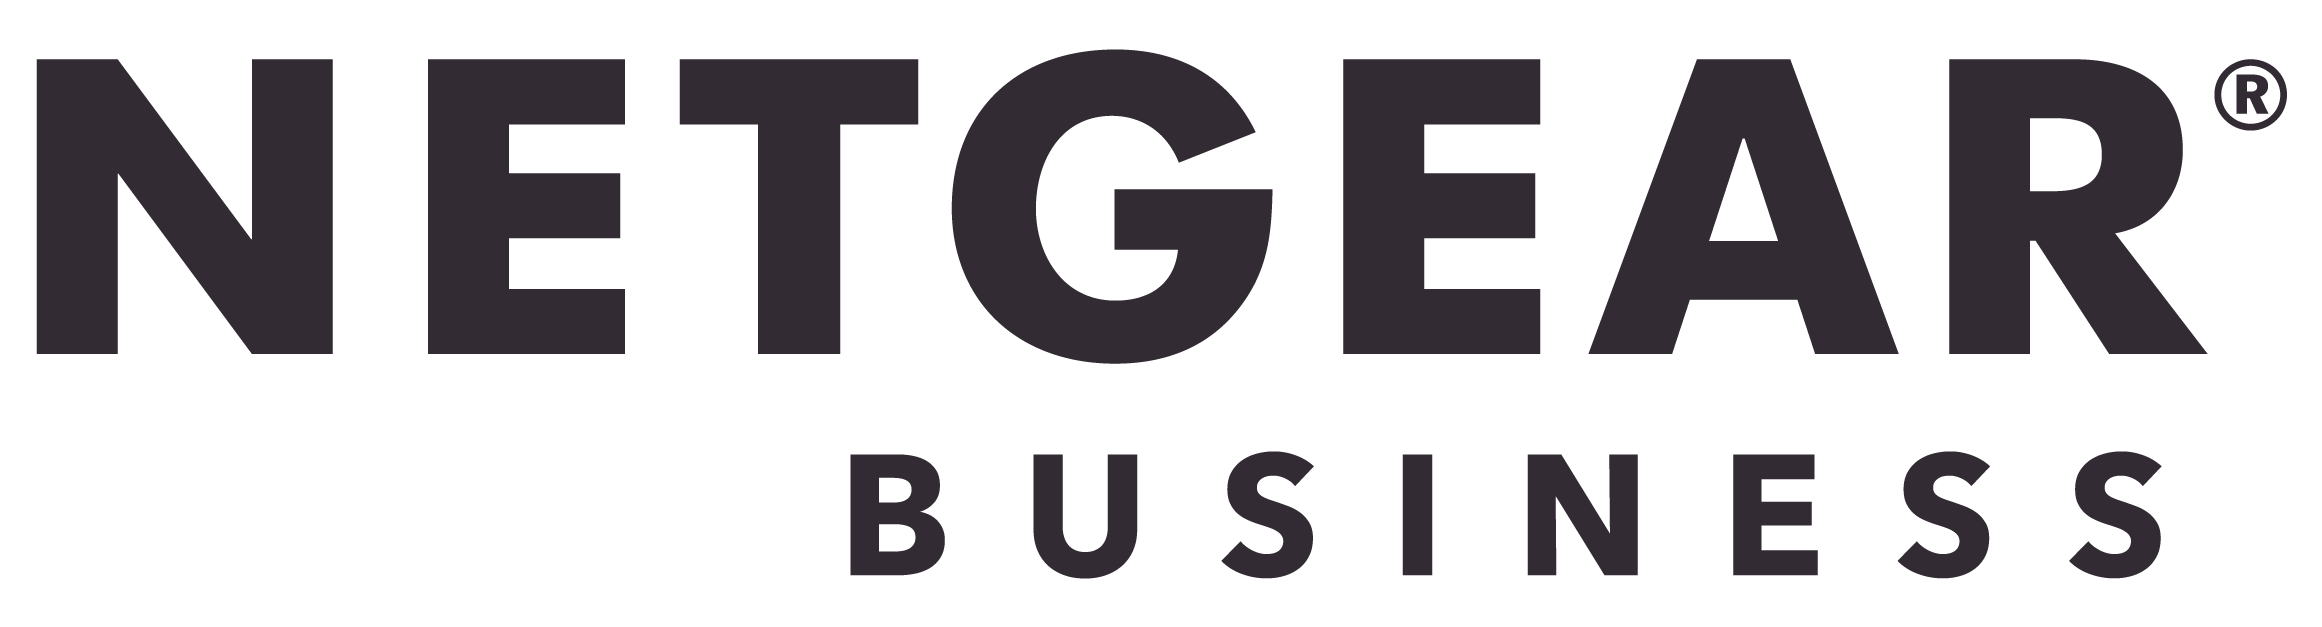 logo business netgear